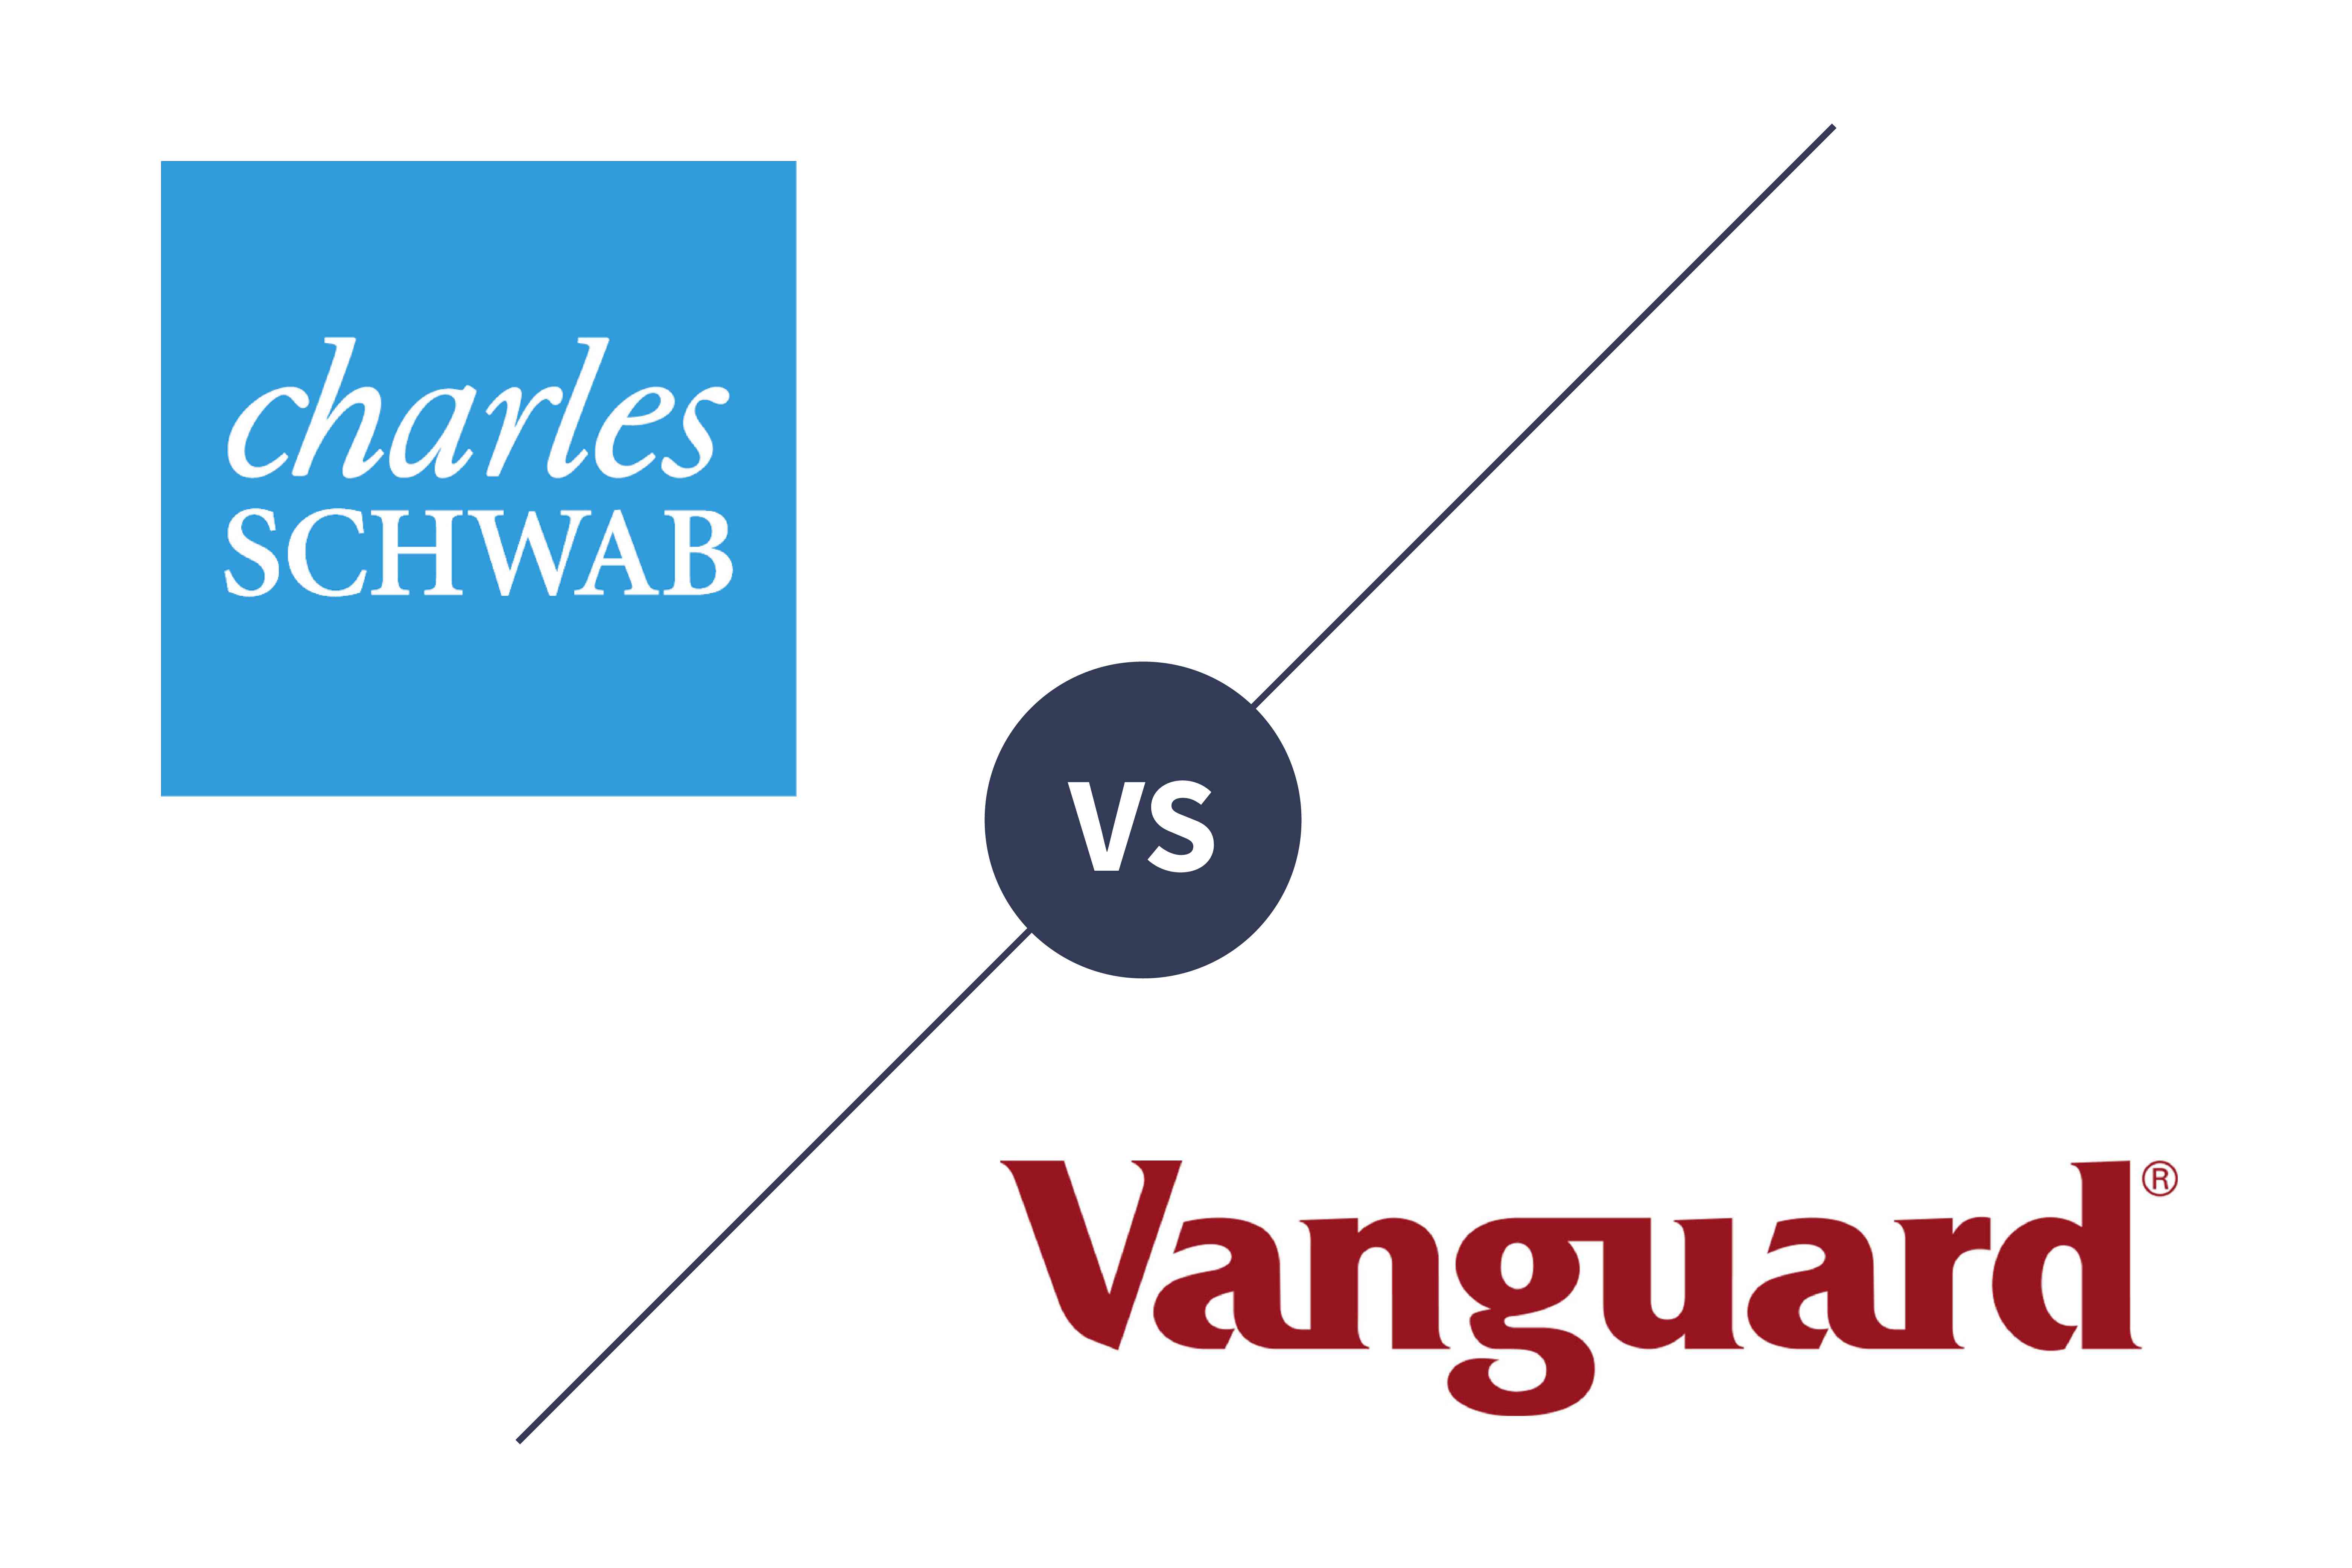 Charles Schwab vs Vanguard